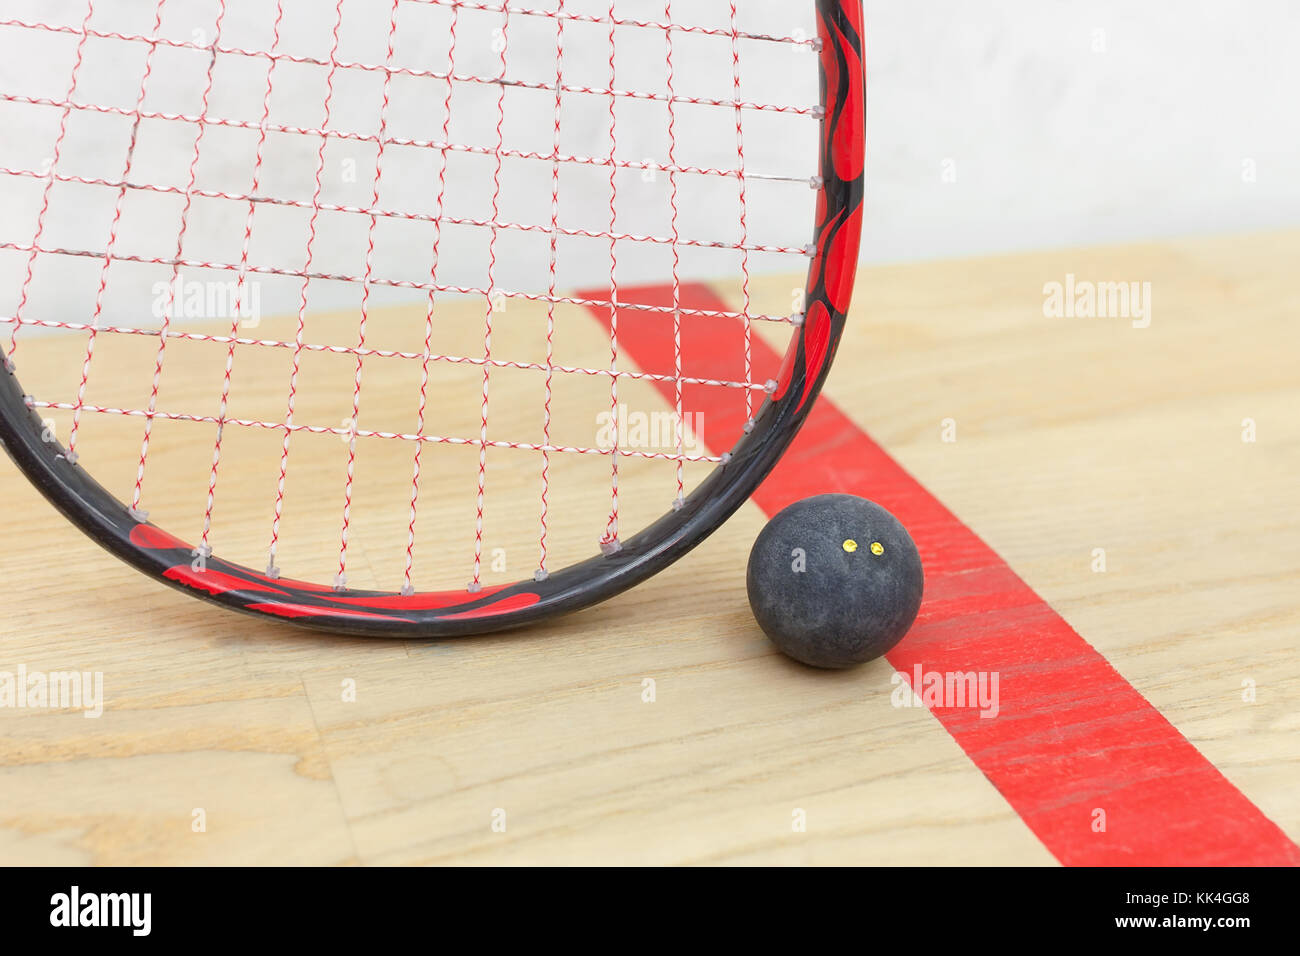 Raquette de squash et la balle Banque D'Images